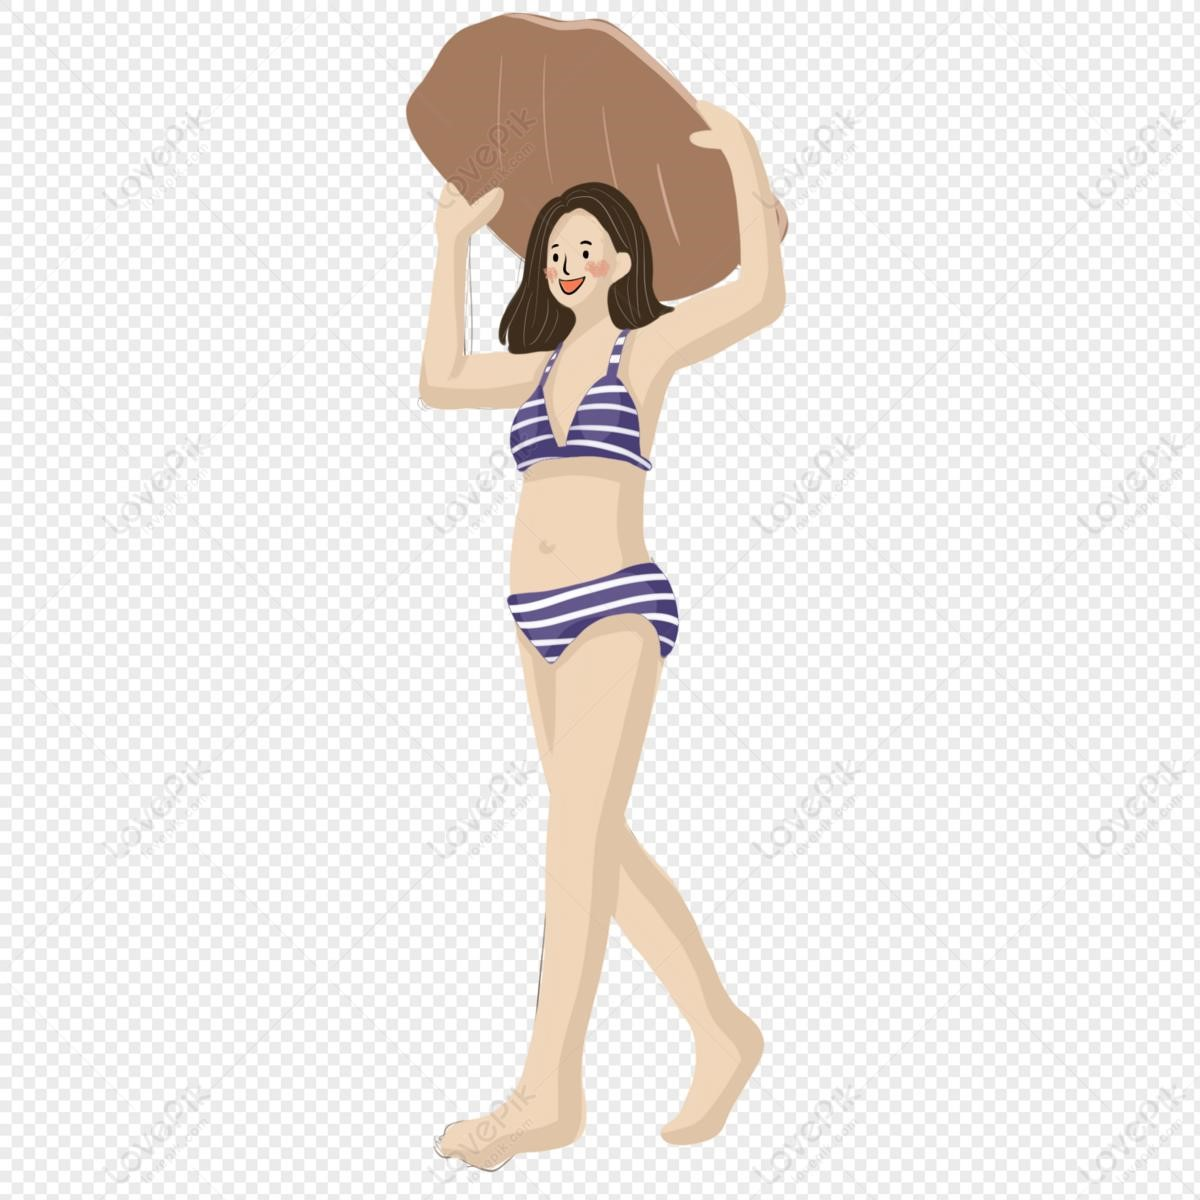 Hình ảnh Người xinh đẹp Hoạt Hình Bikini PNG Miễn Phí Tải Xuống – Lovepik